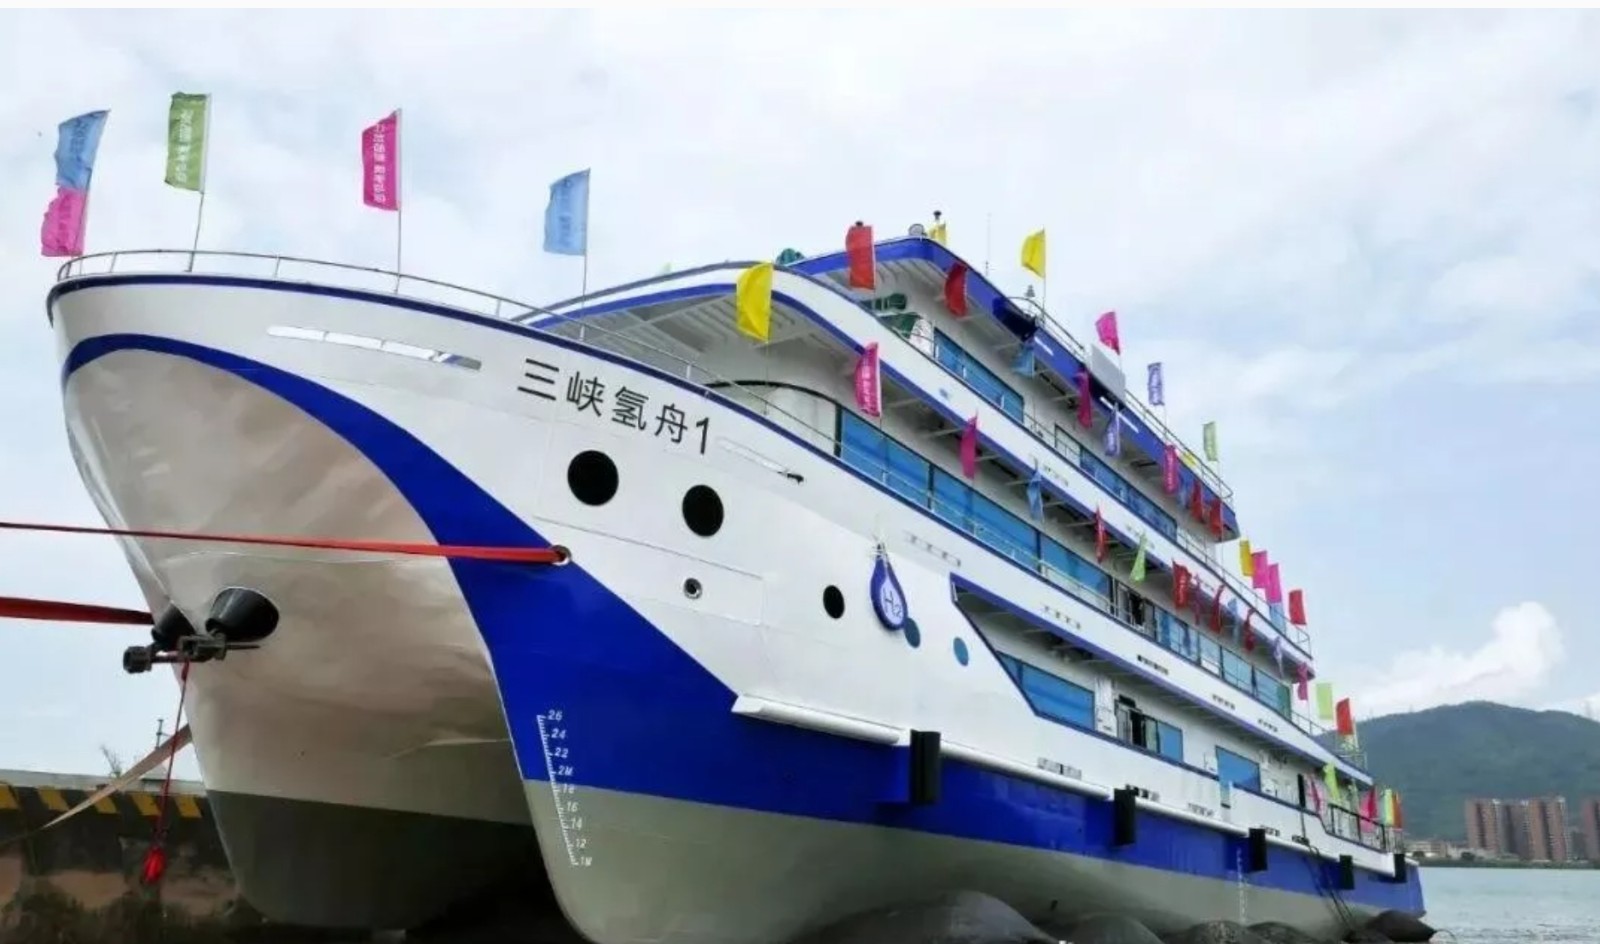 中国首艘氢燃料电池动力示范船“三峡氢舟1”号首航成功